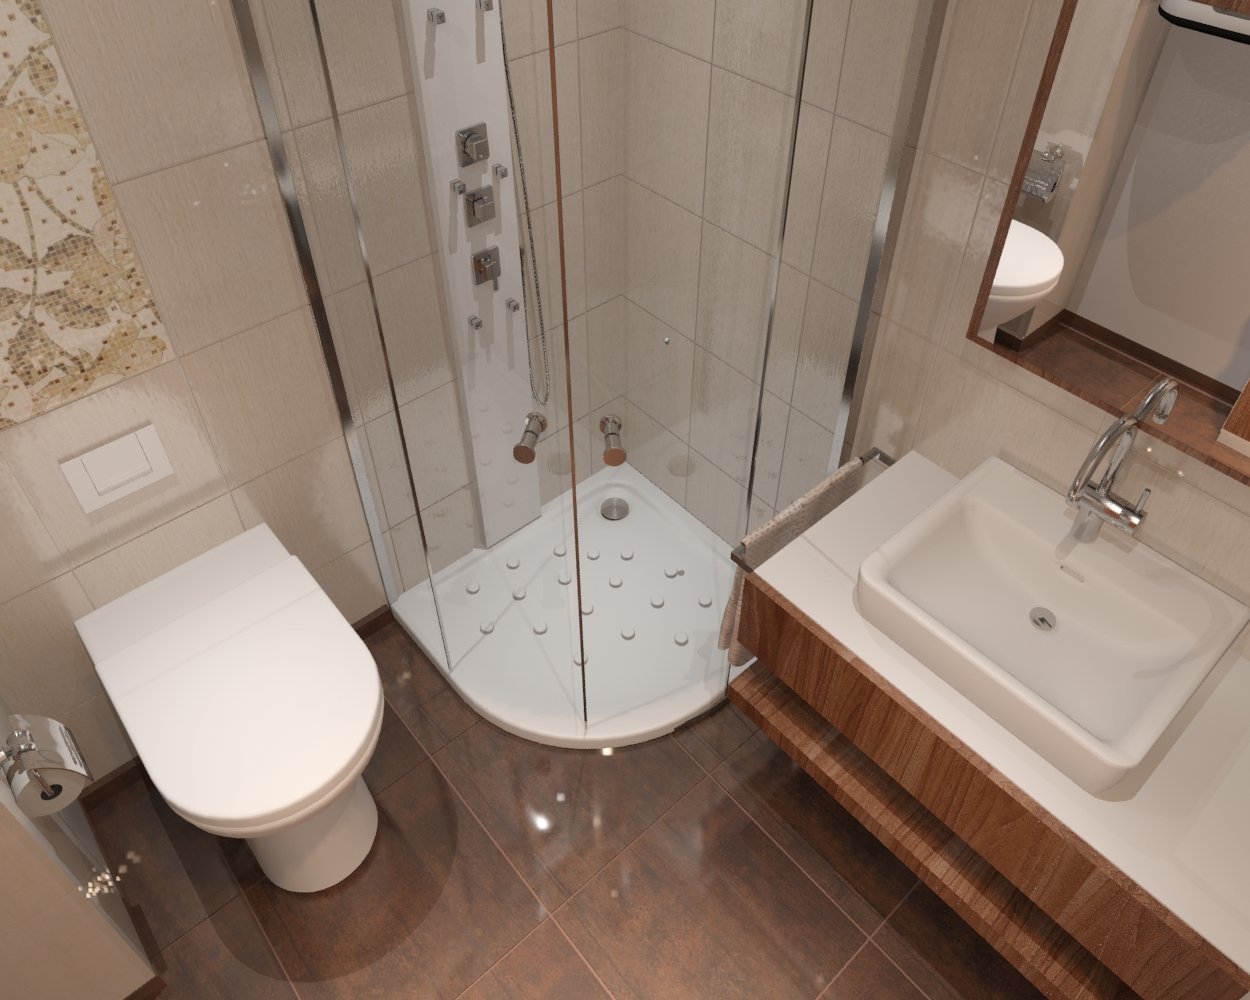 Дизайн ванной комнаты в хрущевке методы, сложности - 75 фото